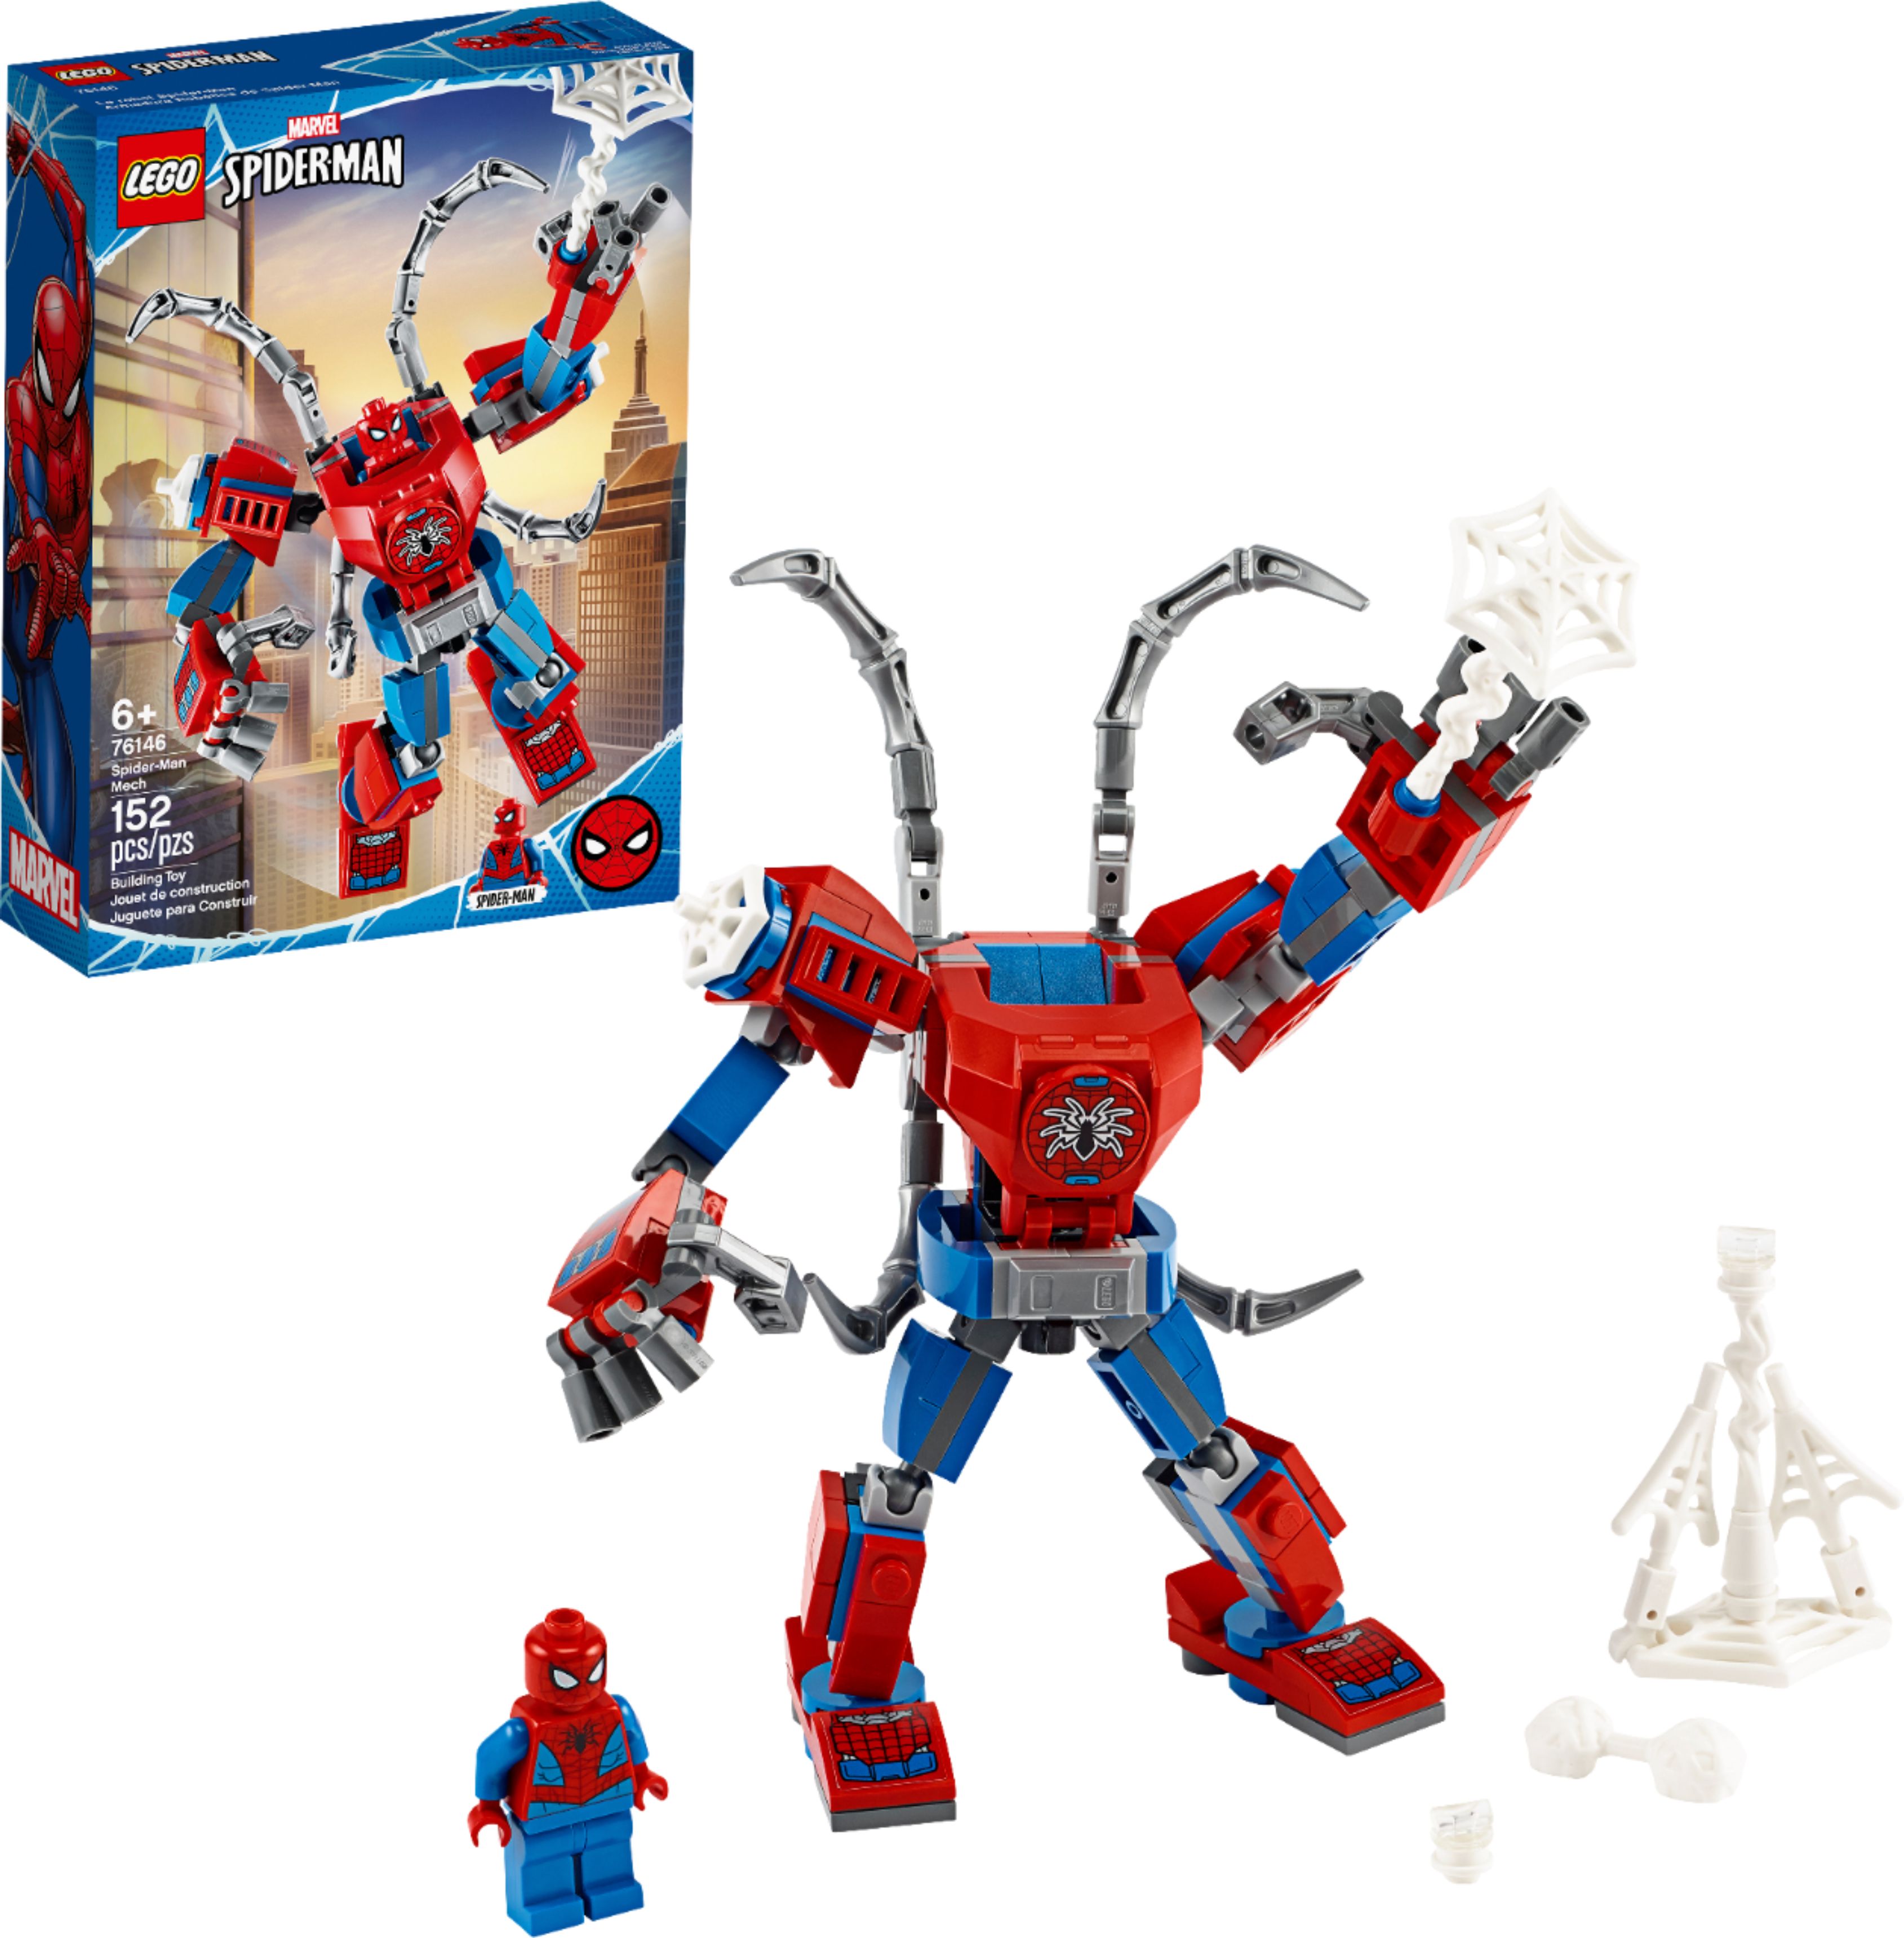 Best Buy: LEGO Marvel Spider-Man: Spider-Man Mech 76146 6289062